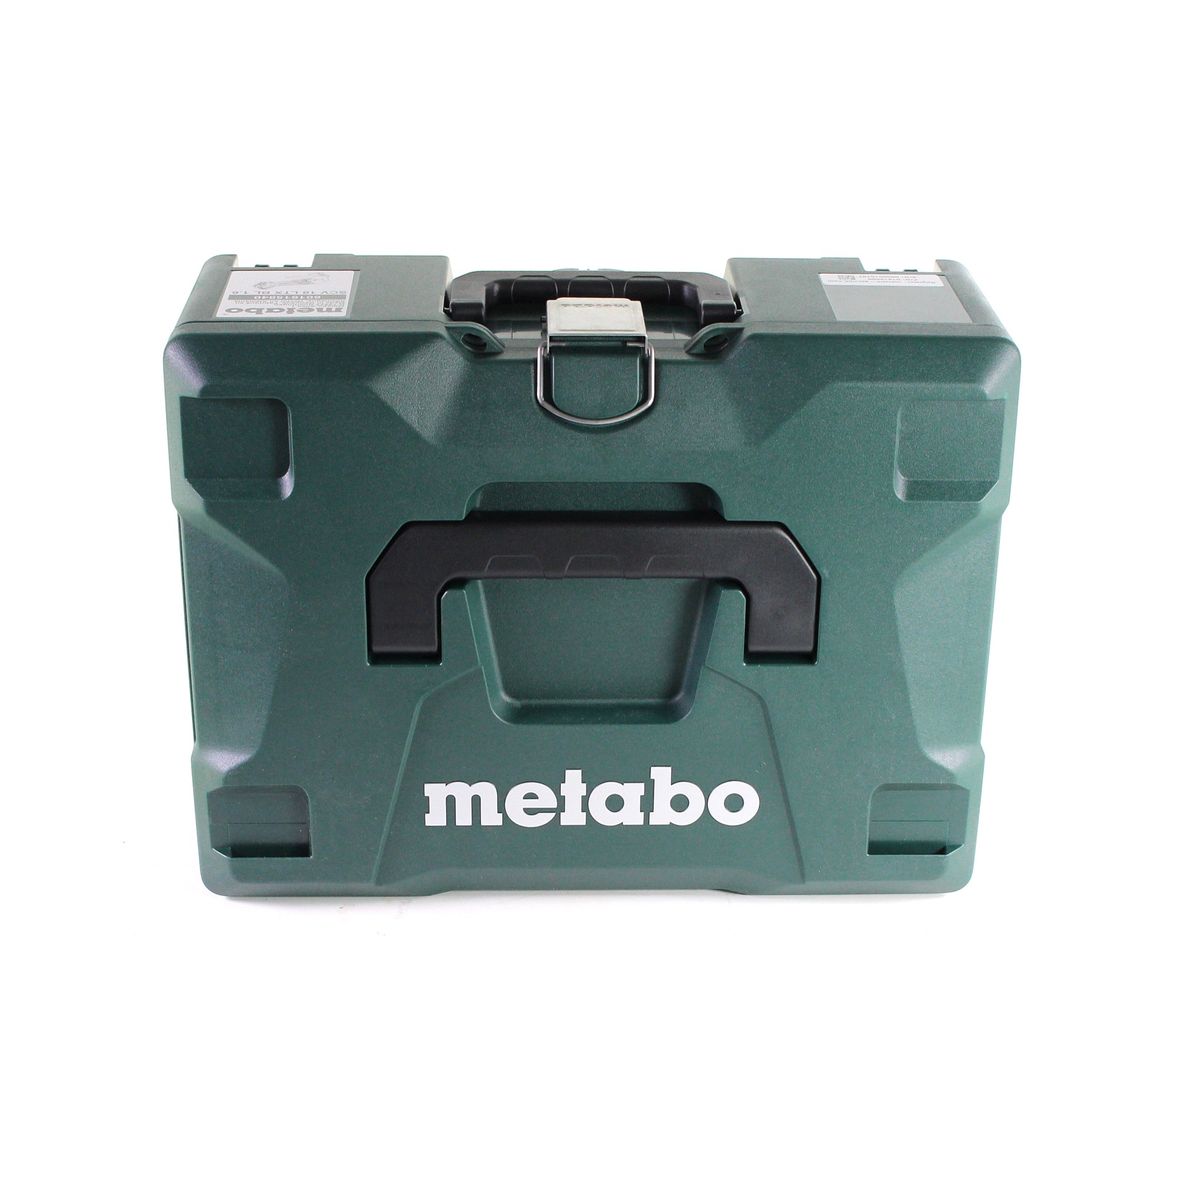 Metabo SCV 18 LTX BL 1.6 Cisaille à tôle sans fil 18 V Brushless Solo  + Coffret MetaLoc - sans batterie sans chargeur- Full Service - GRATUIT 3 ans de protestion complète (601615840)